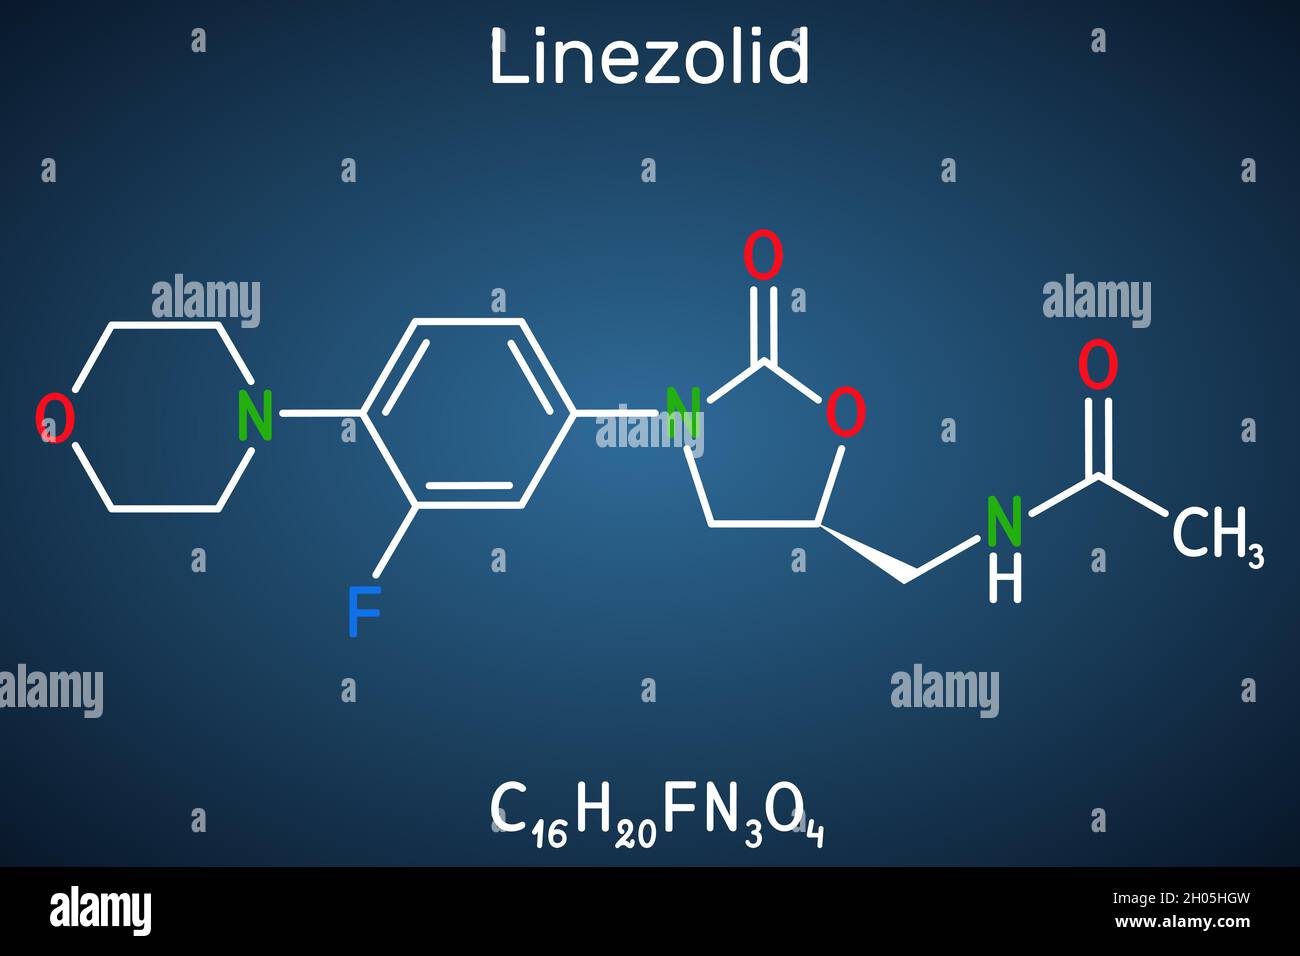 Linezolid-Molekül. Es ist ein synthetisches Antibiotikum, das zur Behandlung von Infektionen wie Streptokokken, Staphylococcus aureus und MRSA verwendet wird. Strukturelle Chemie Stock Vektor